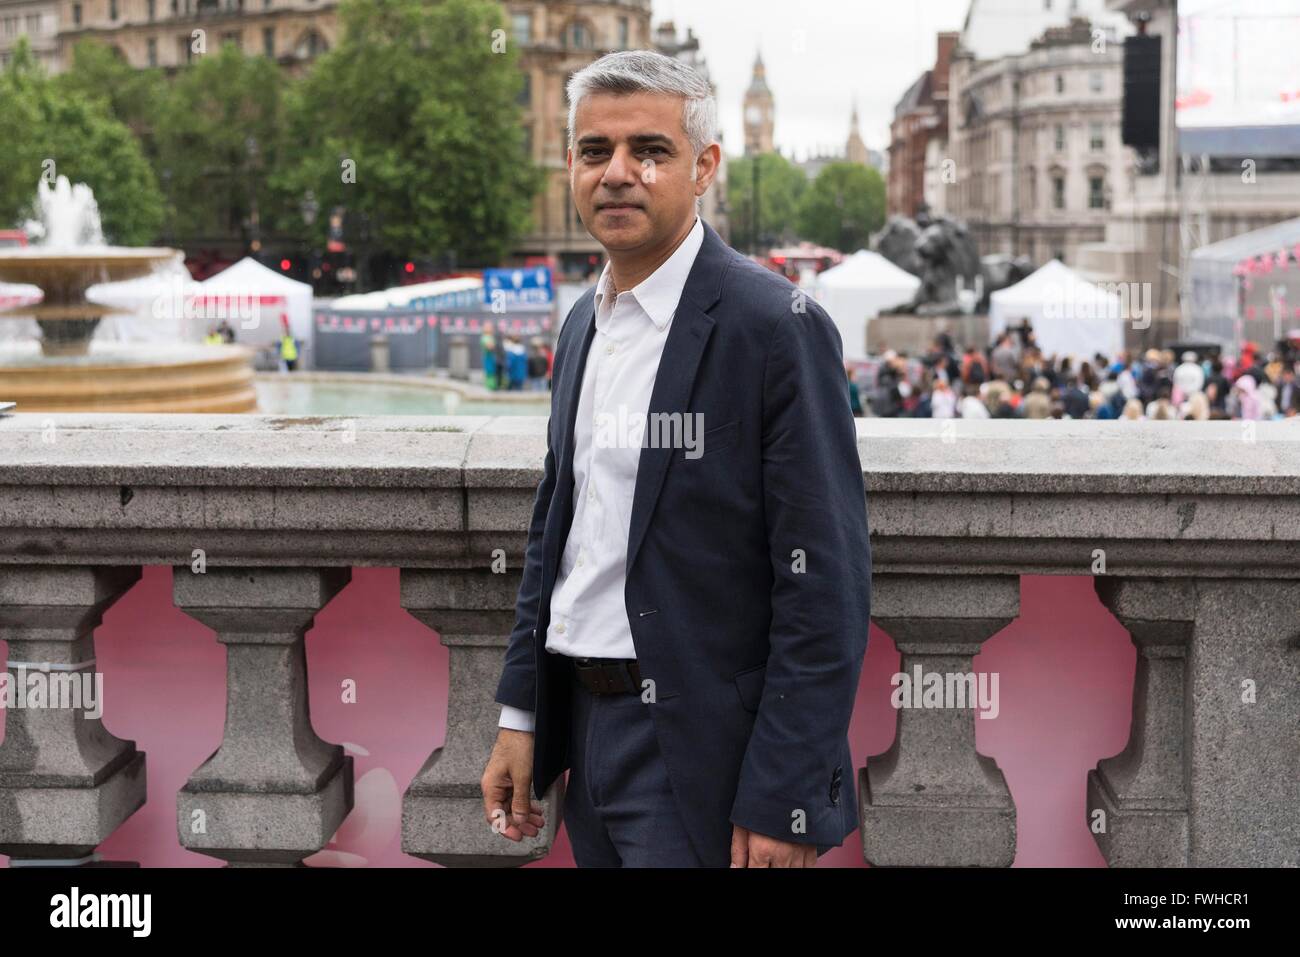 (160612) - LONDRES, 12 de junio de 2016 (Xinhua) -- El Alcalde de Londres, Sadiq Khan, posa para las fotos como él participa en las celebraciones por la Reina Isabel II el 90 cumpleaños oficial en Trafalgar Square en Londres, 12 de junio de 2016. (Xinhua/Ray Tang) Foto de stock